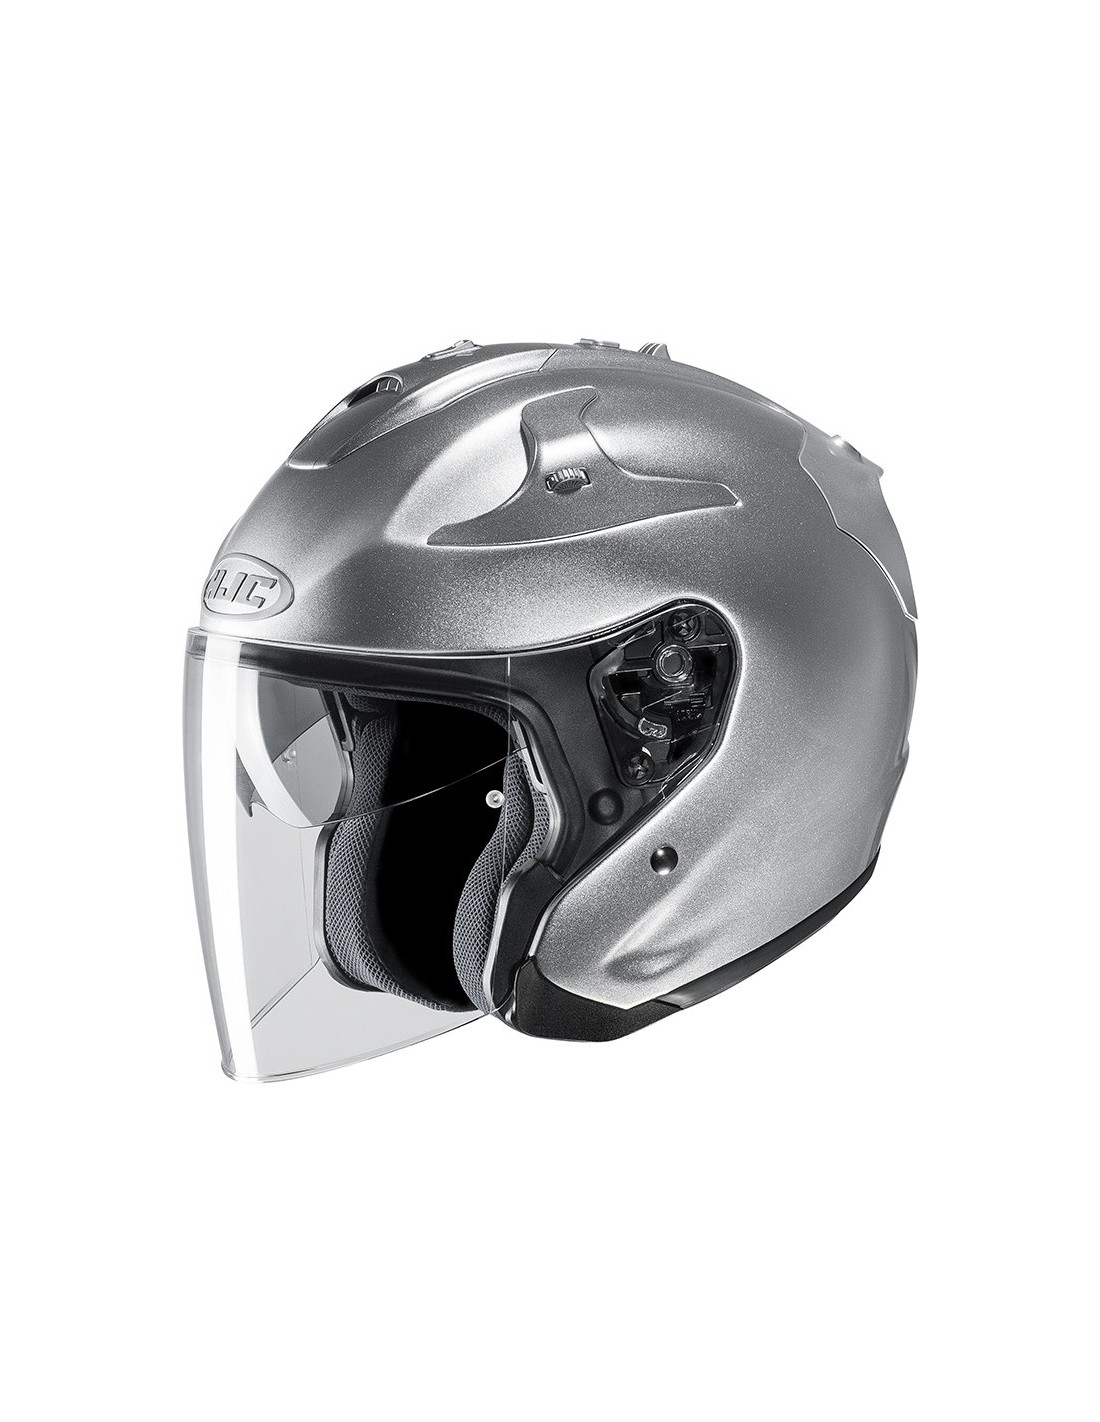 Prezzo del casco moto jet hjc fg-jet metal cr silver